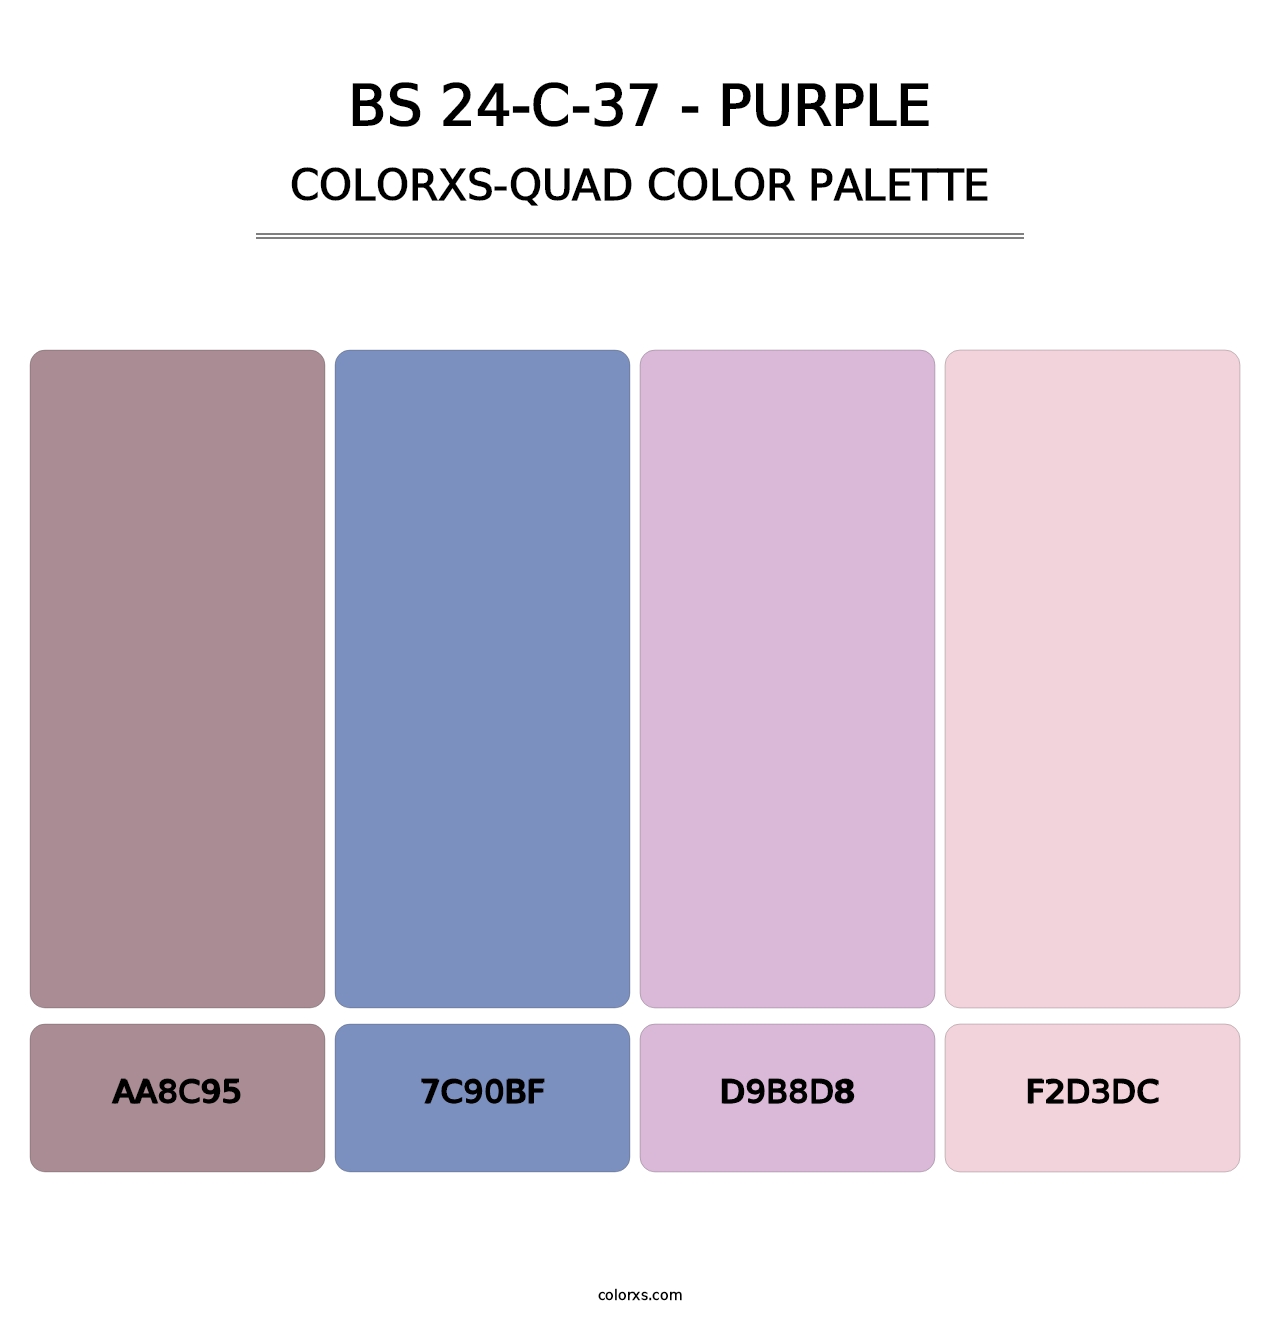 BS 24-C-37 - Purple - Colorxs Quad Palette